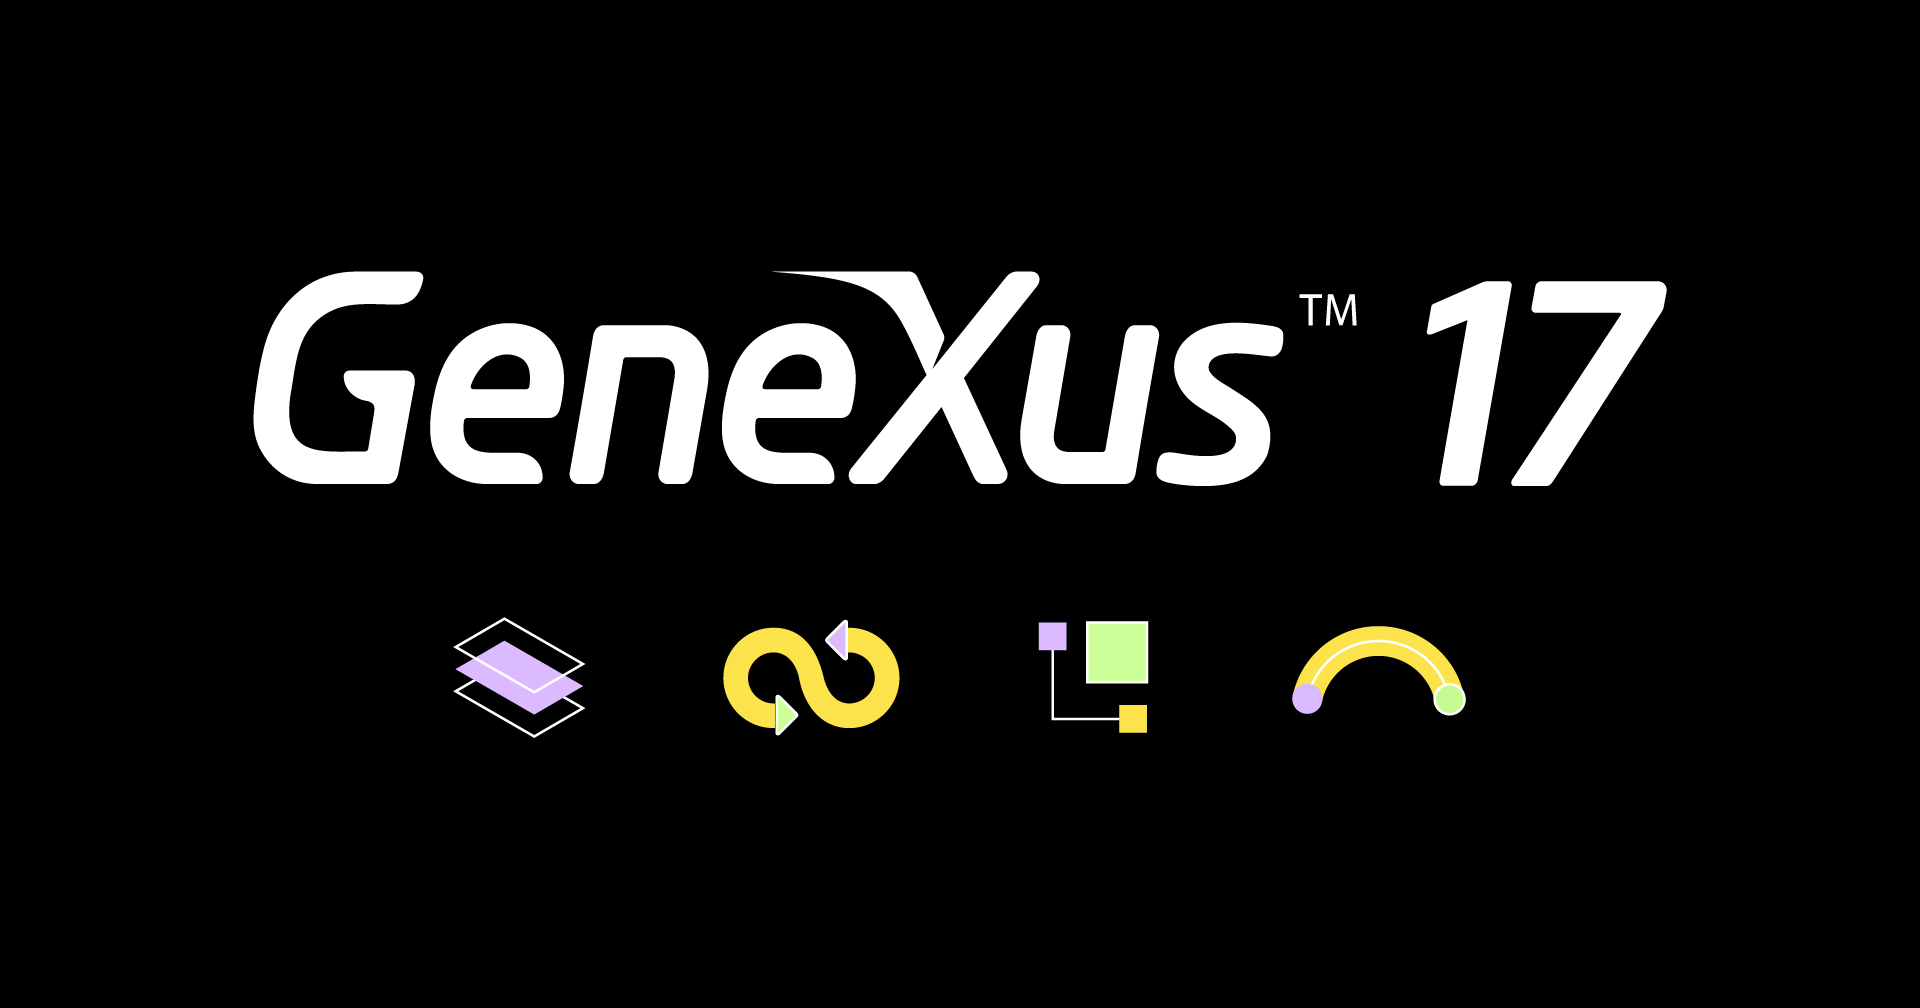 GeneXus 17 Live - GeneXus 17

S\N